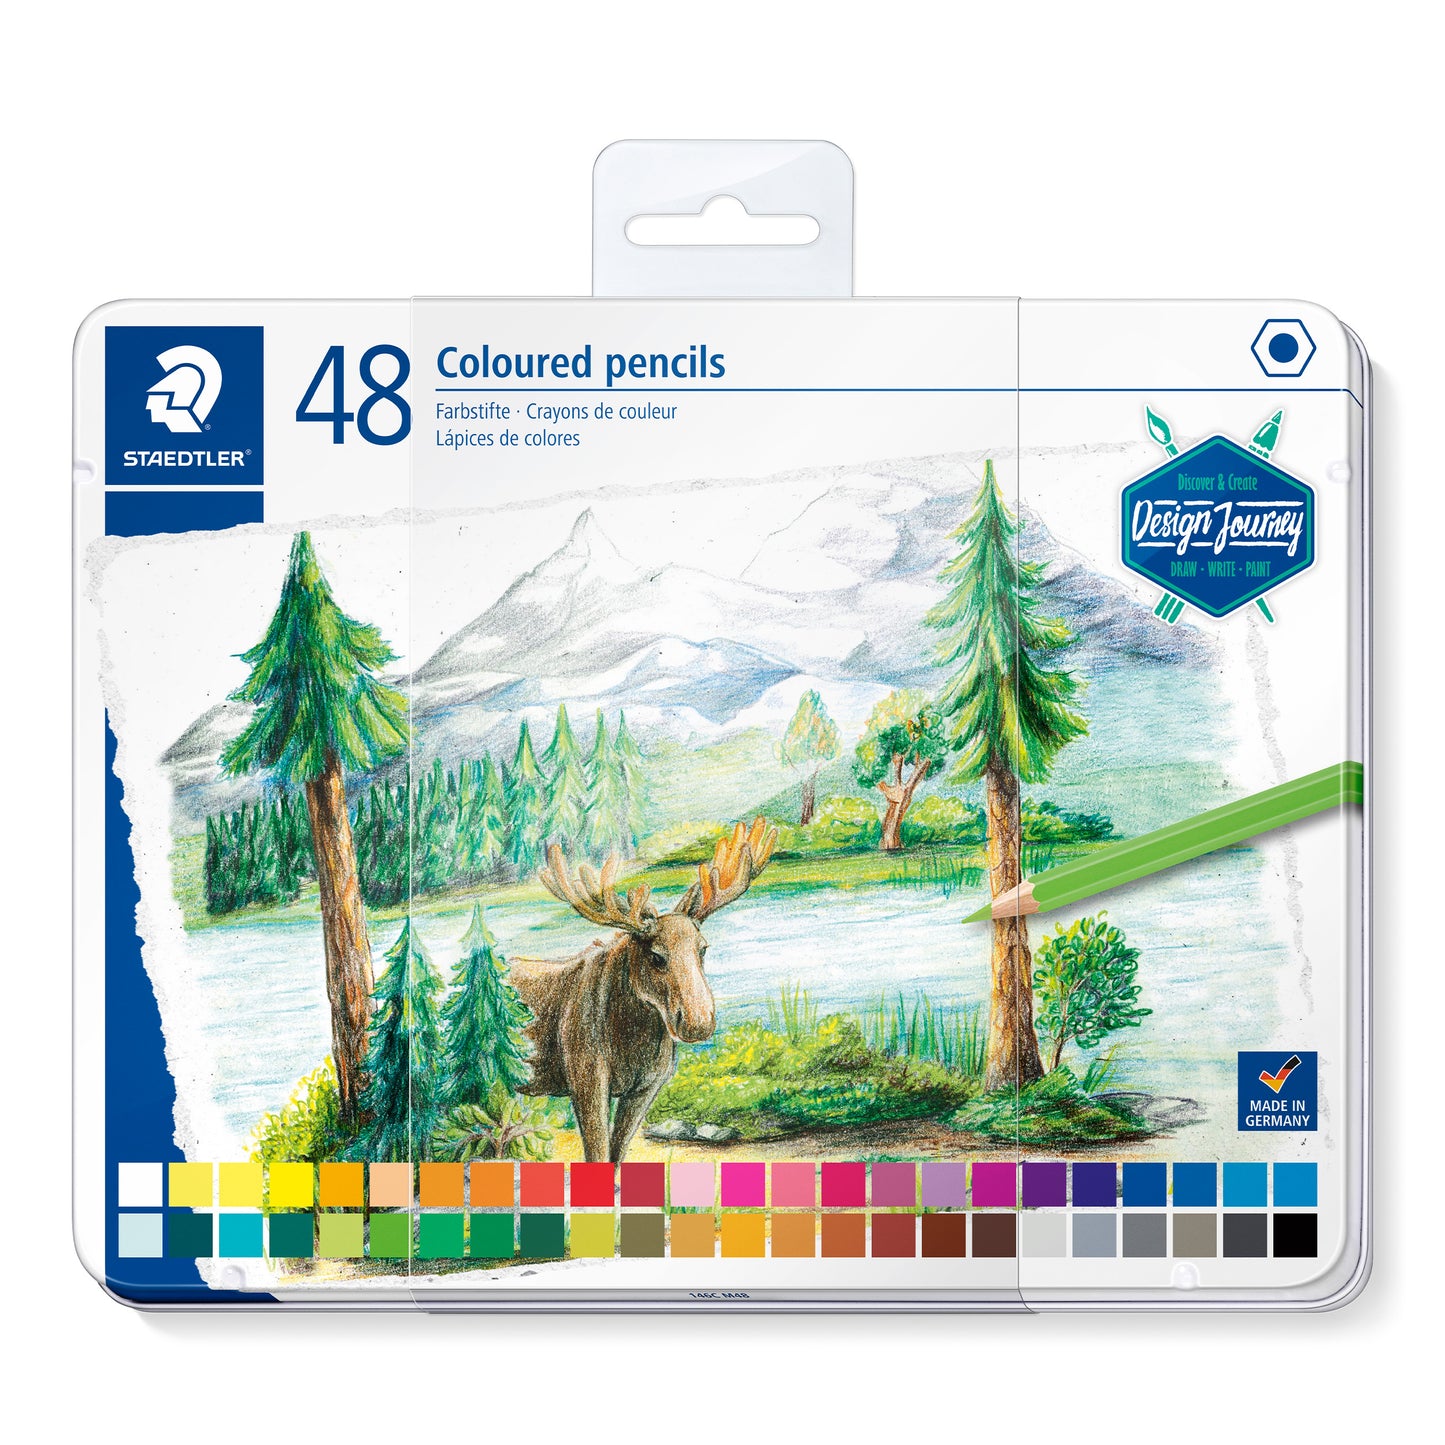 Staedtler Premium Coloured Pencils 146C M48 Design Journey Tin of 48